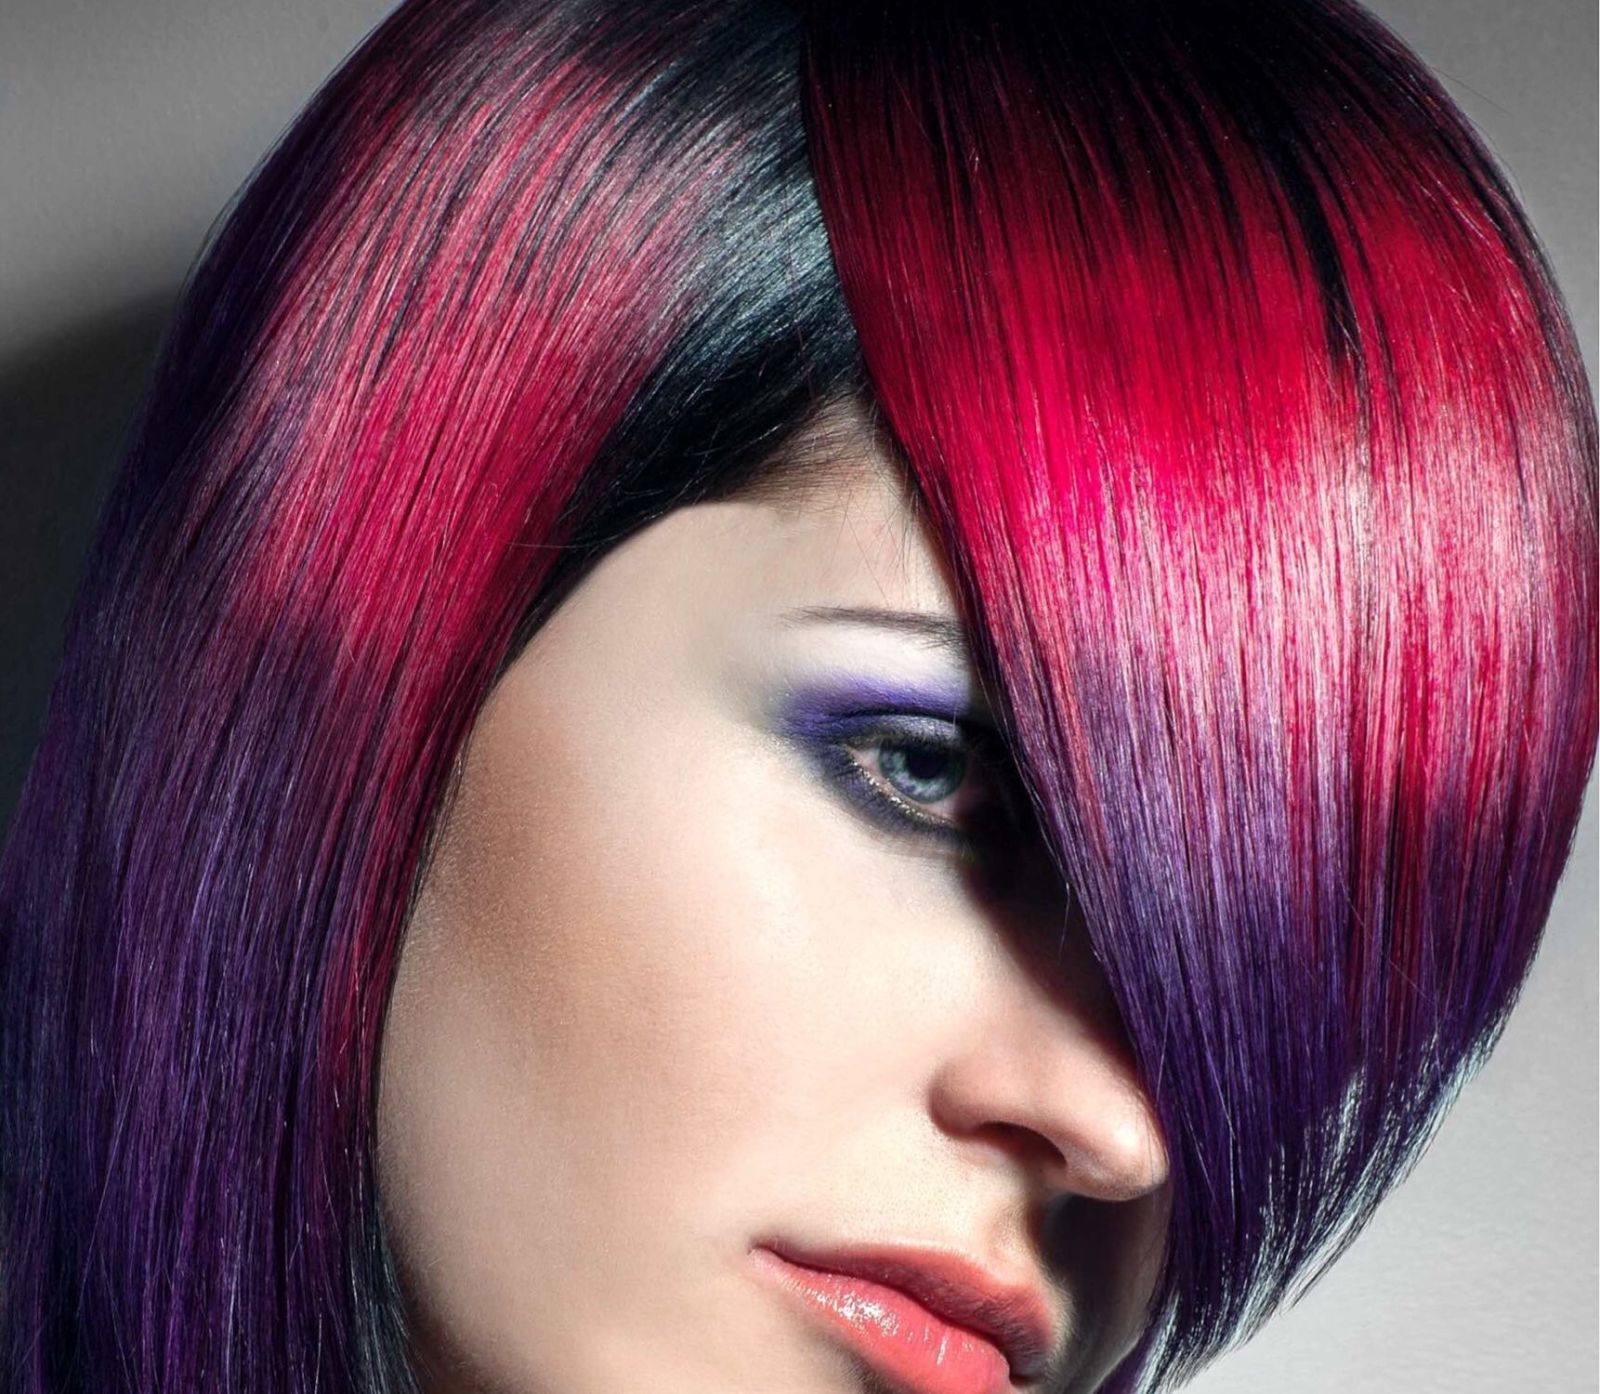 Окрашивание волос в два цвета. Блочное окрашивание контраст. Двухцветное окрашивание волос 21 века. Способы декоративной окраски волос. Креативное окрашивание волос сочетание синего с красным.